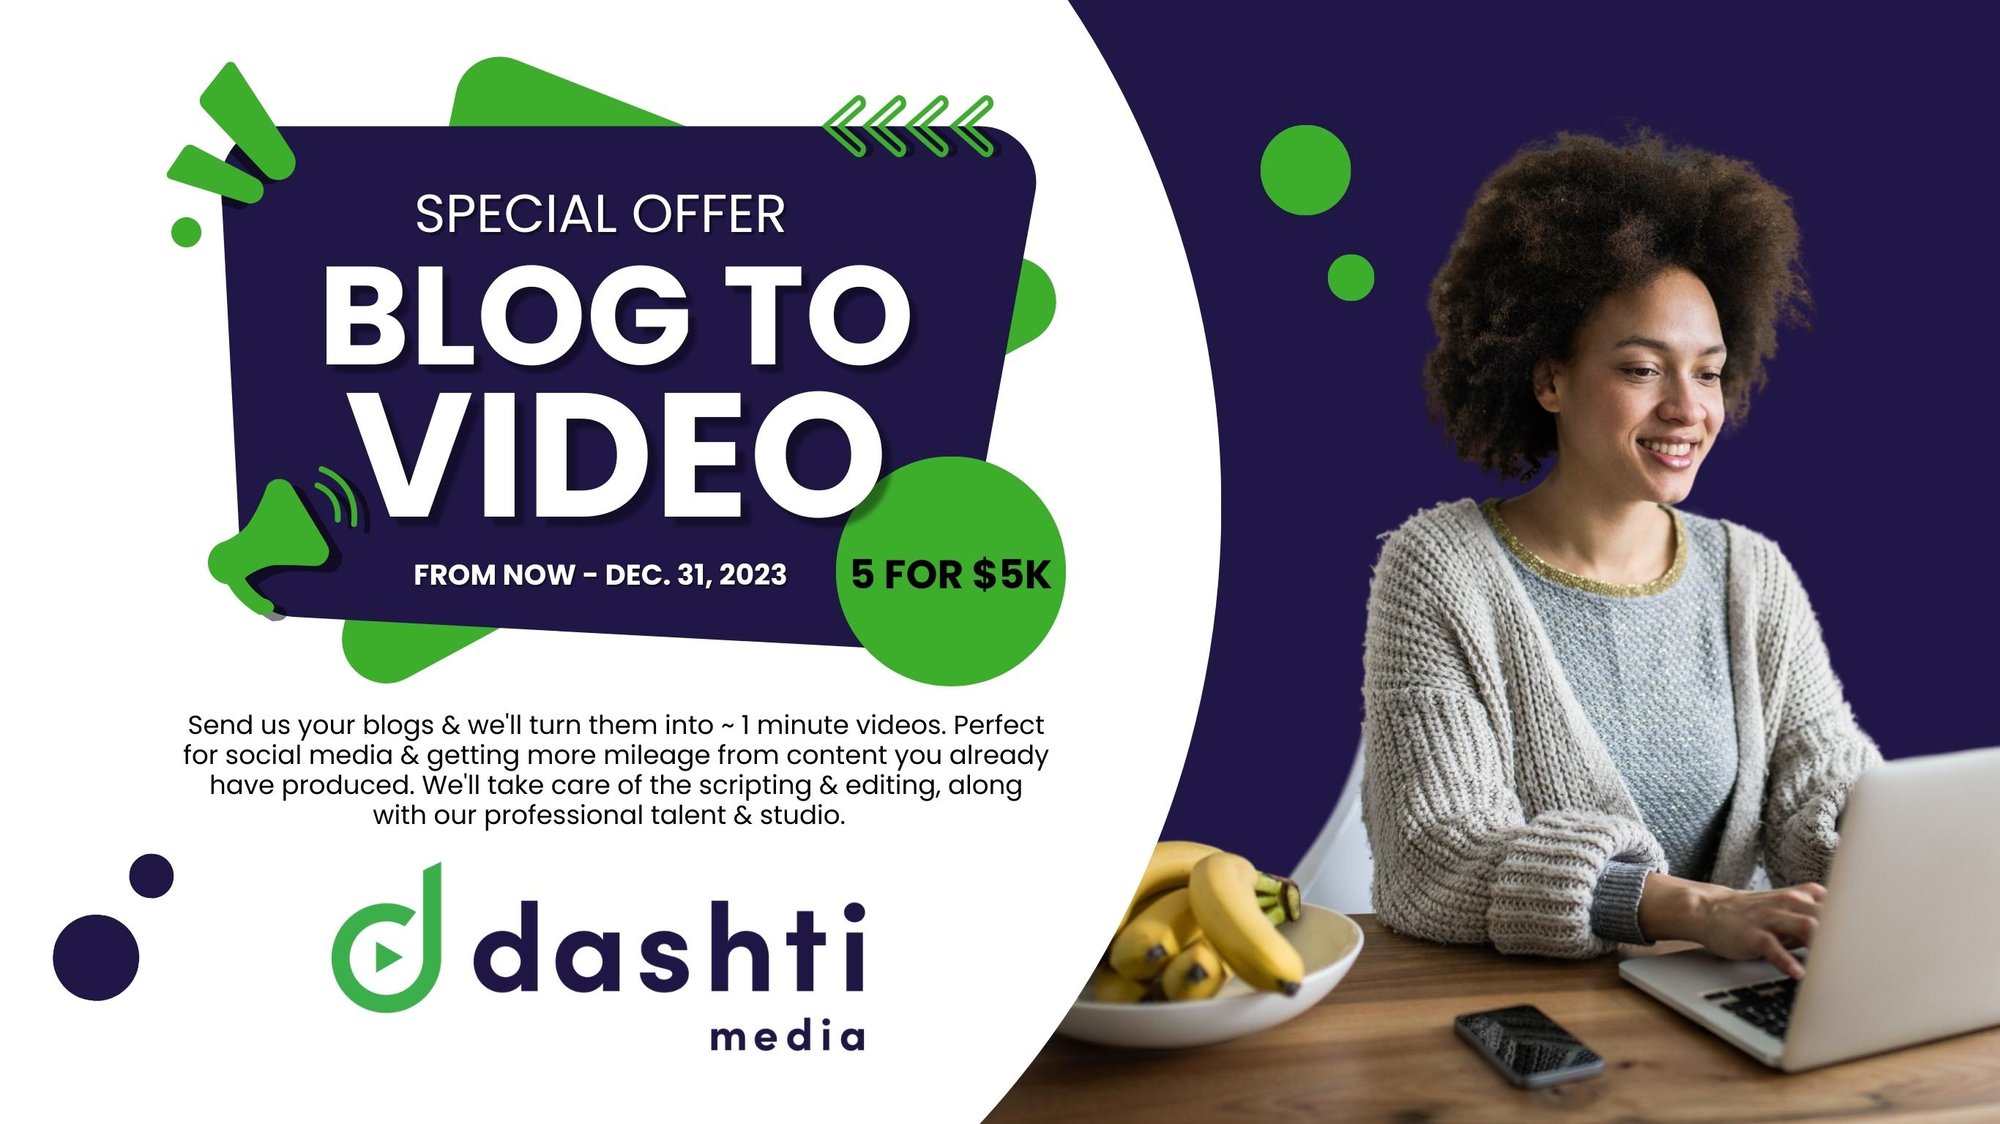 Dashti Media Blog to Video Offer